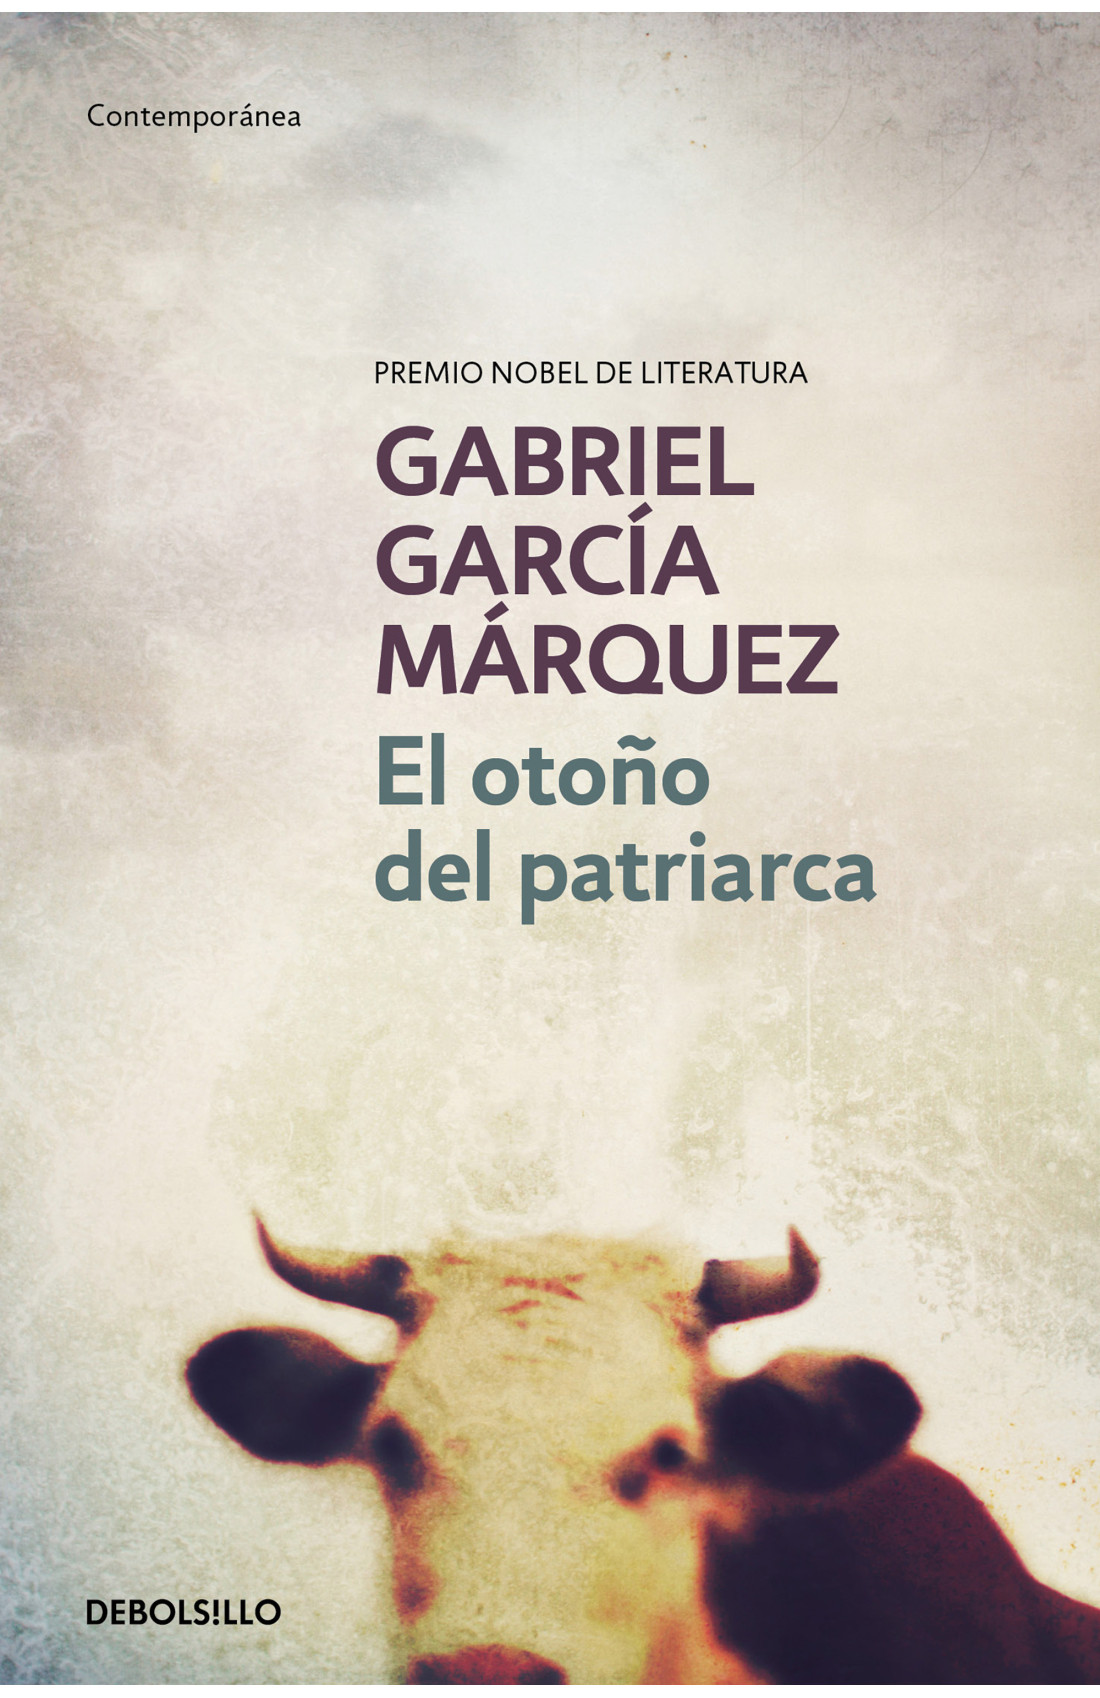 Zenda recomienda: El otoño del patriarca, de Gabriel García Márquez